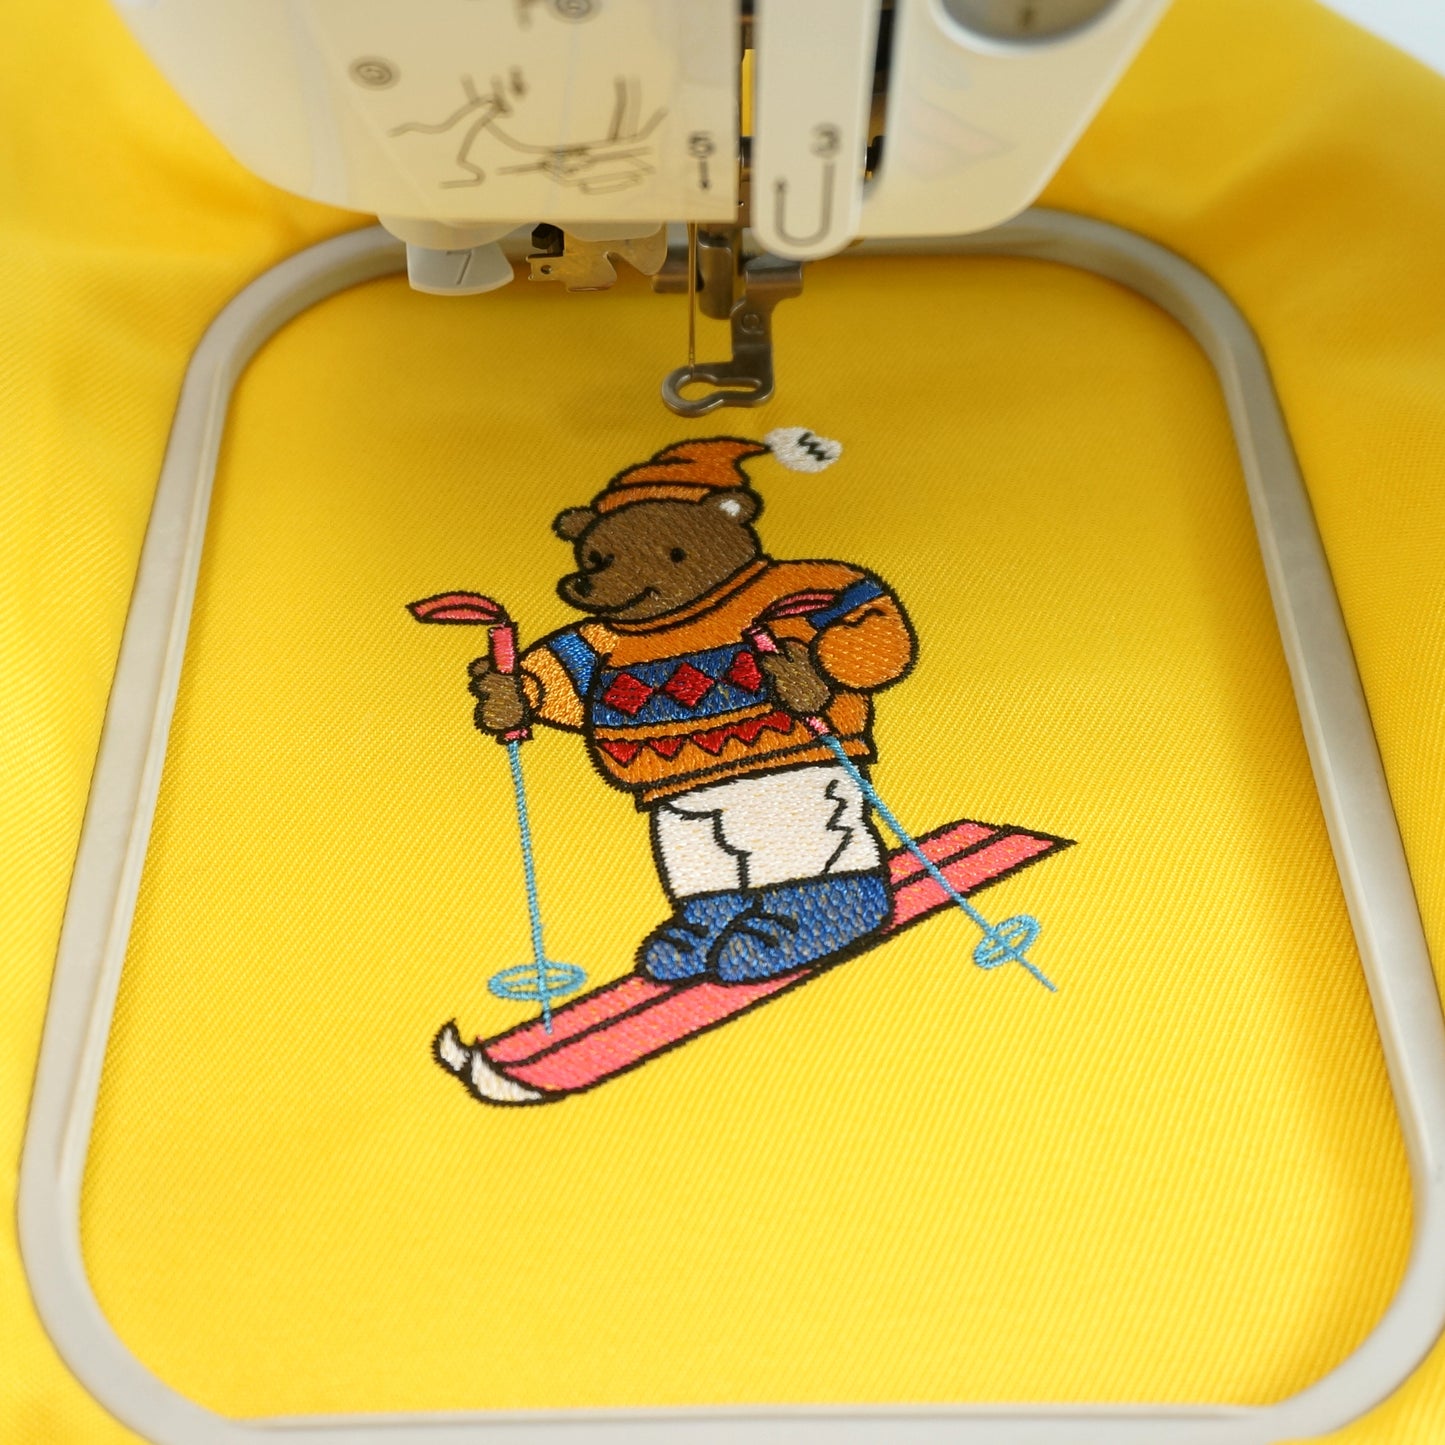 New brothread Cut Away Machine Embroidery Stabilizer Backing 12" x 50 Yd roll - Medium Weight 2.5oz